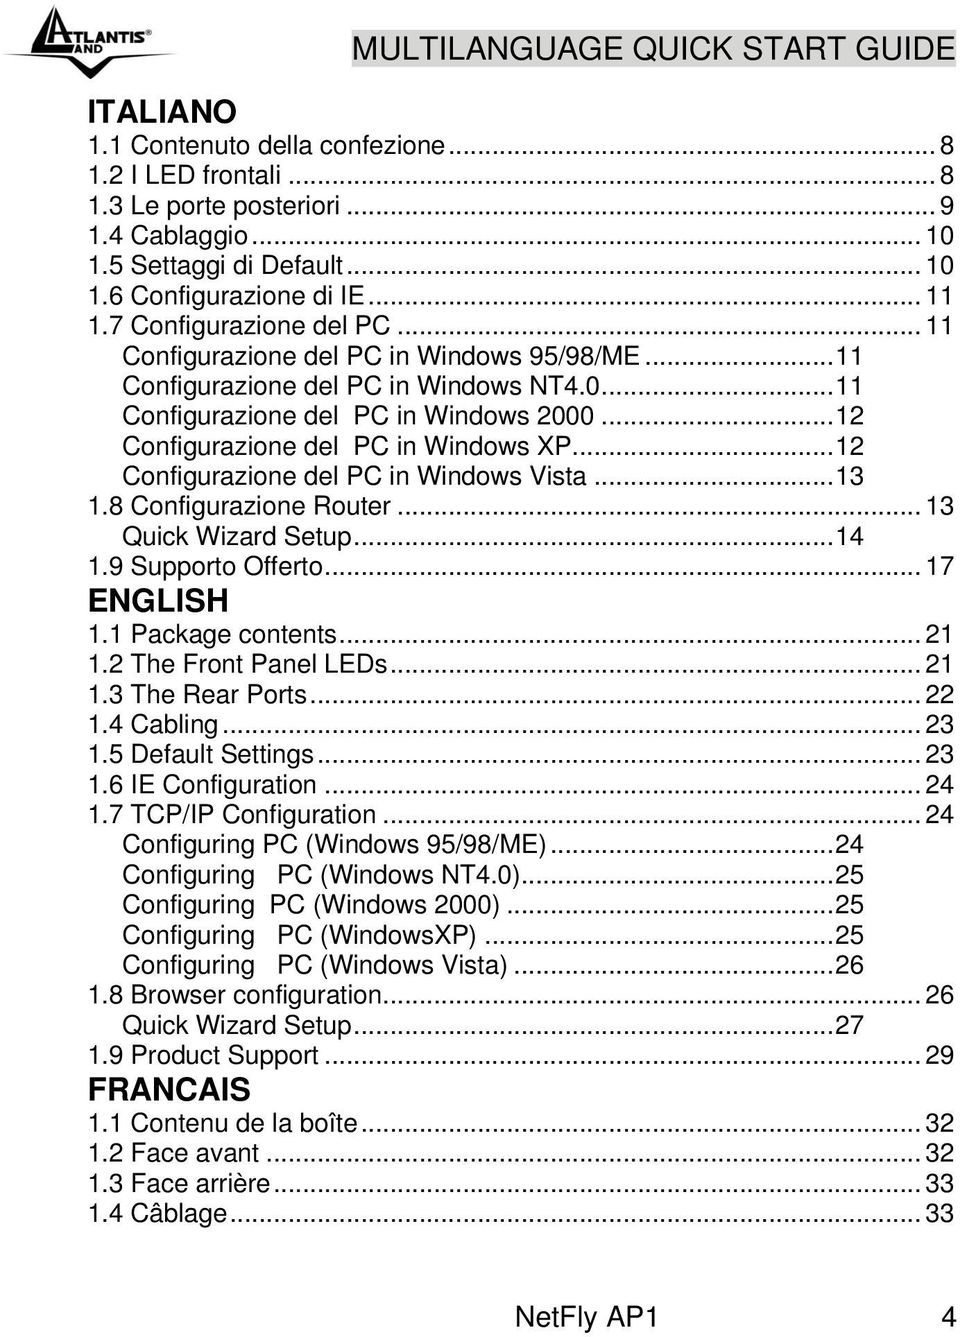 .. 12 Configurazione del PC in Windows XP... 12 Configurazione del PC in Windows Vista... 13 1.8 Configurazione Router... 13 Quick Wizard Setup... 14 1.9 Supporto Offerto... 17 ENGLISH 1.